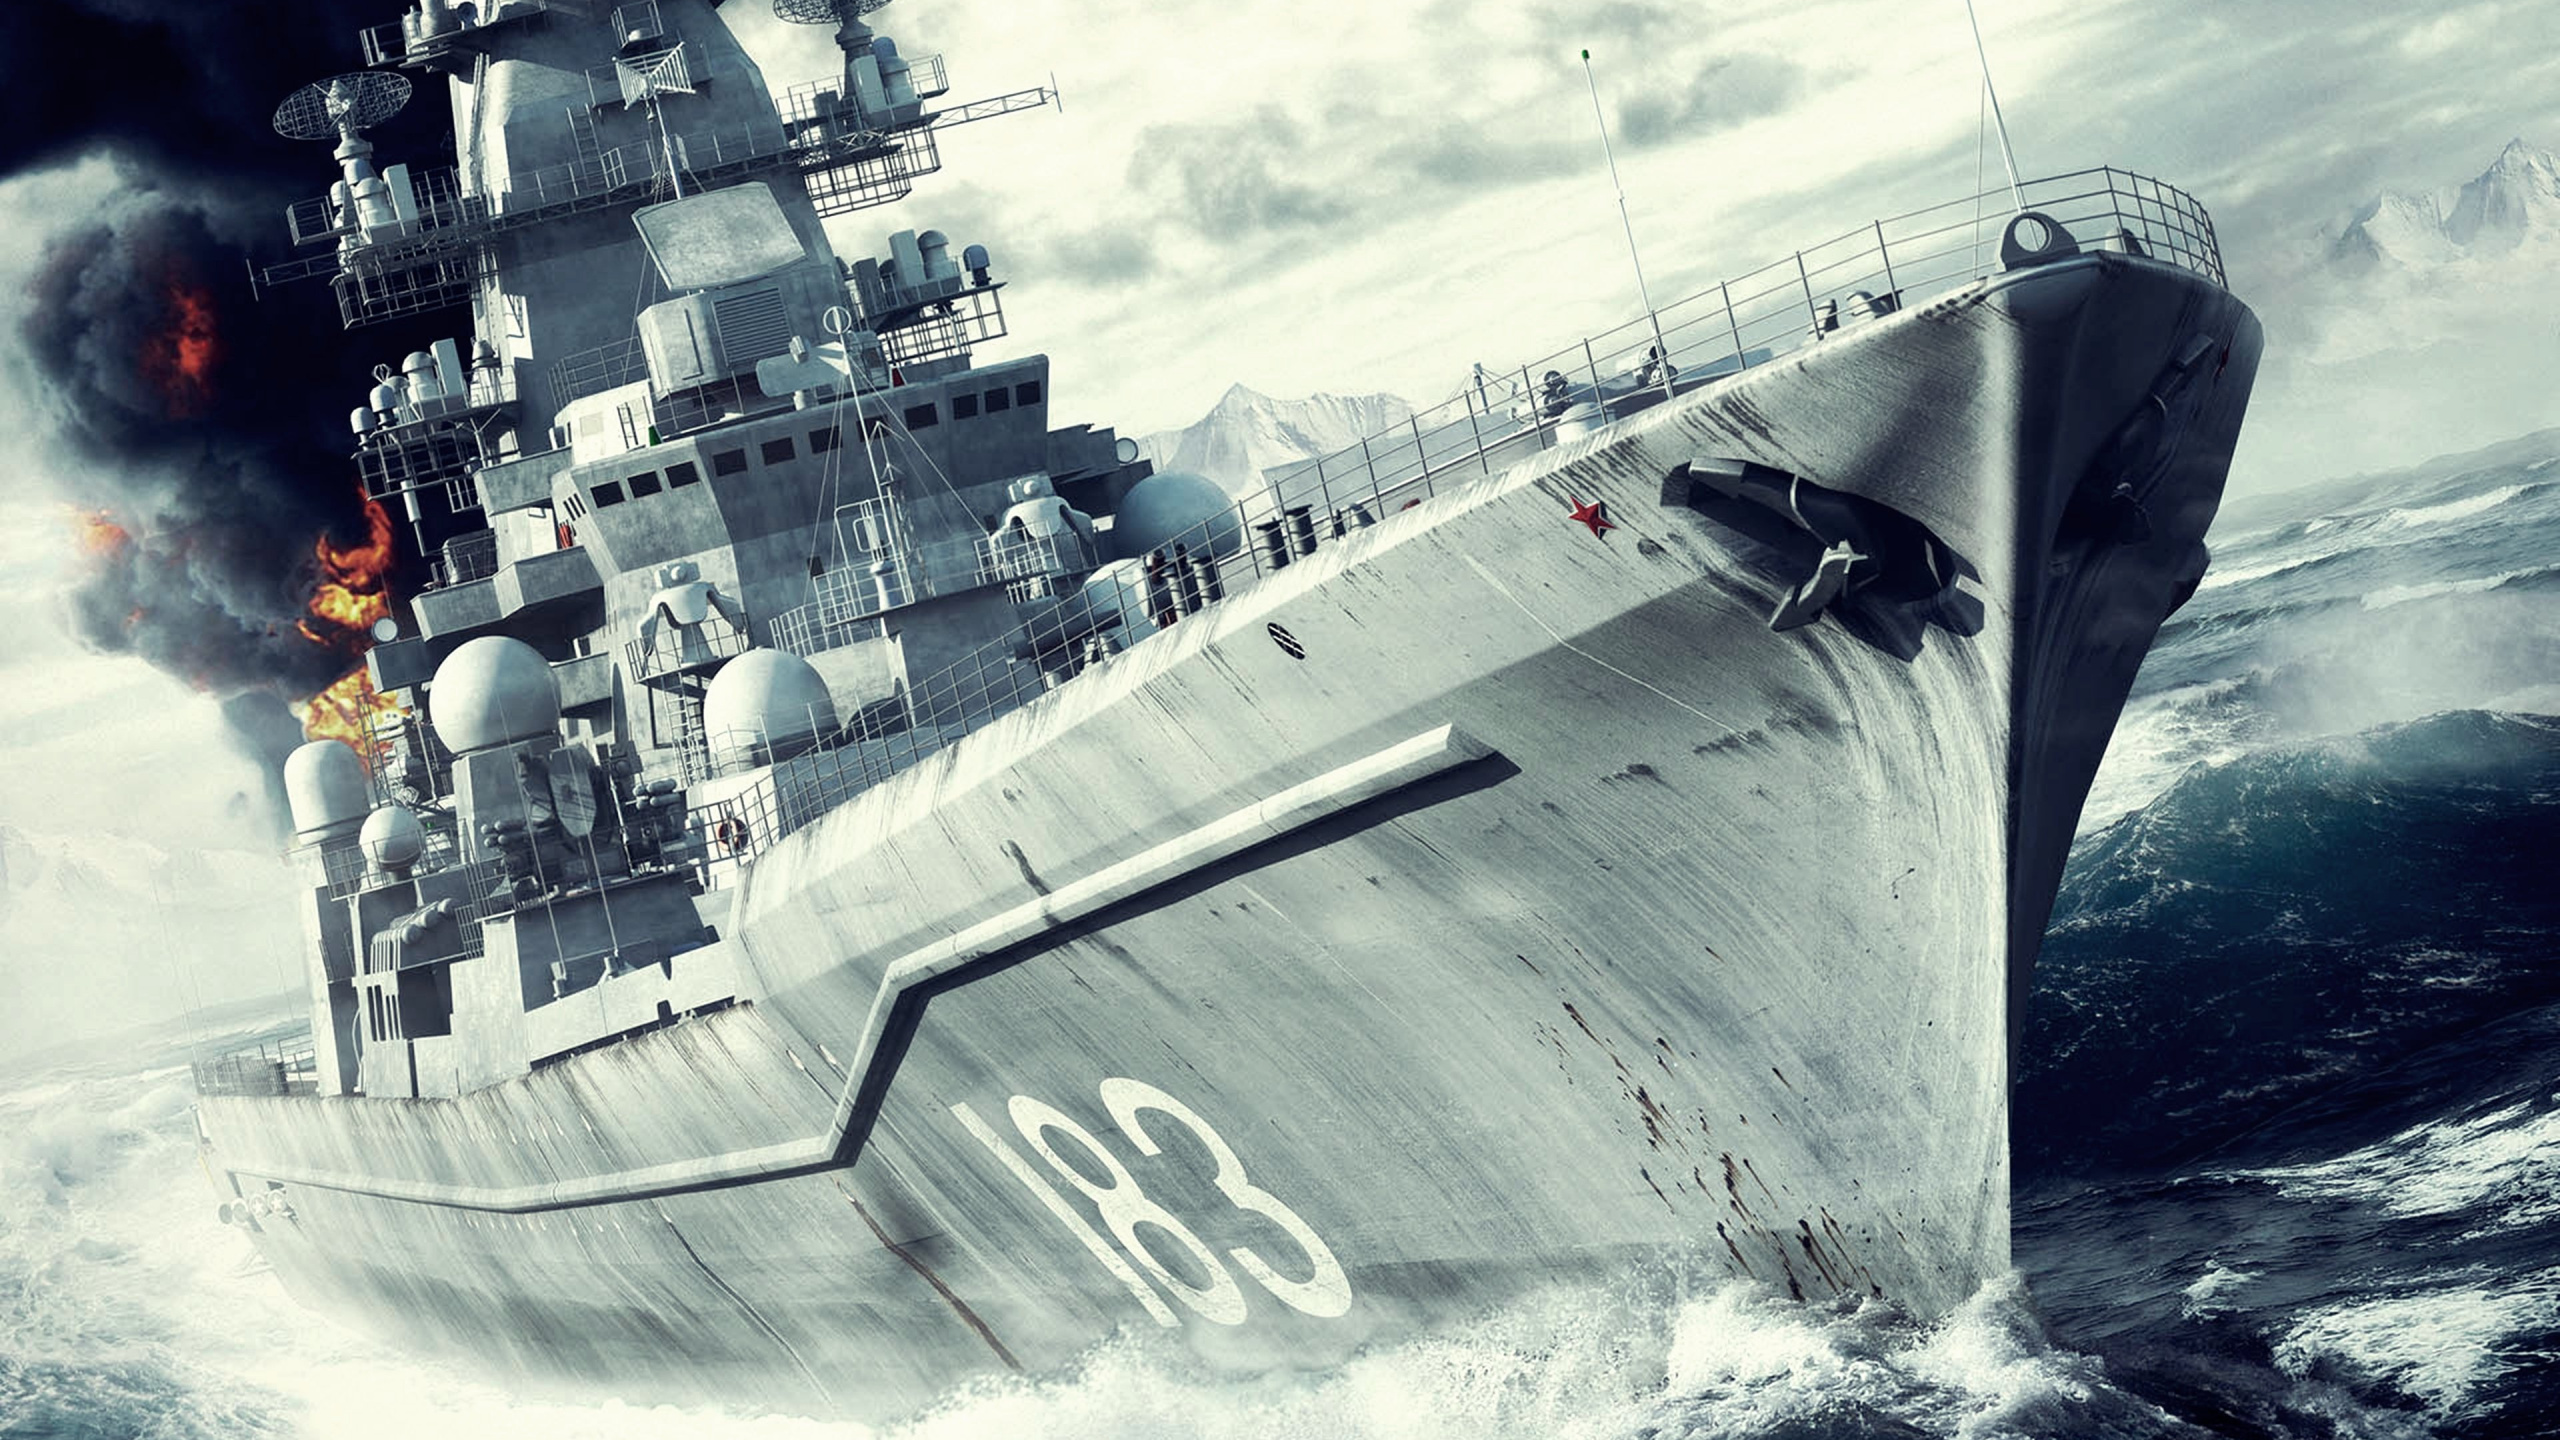 战舰, 海军的船, 军舰, 战列巡洋舰, 驱逐舰 壁纸 2560x1440 允许